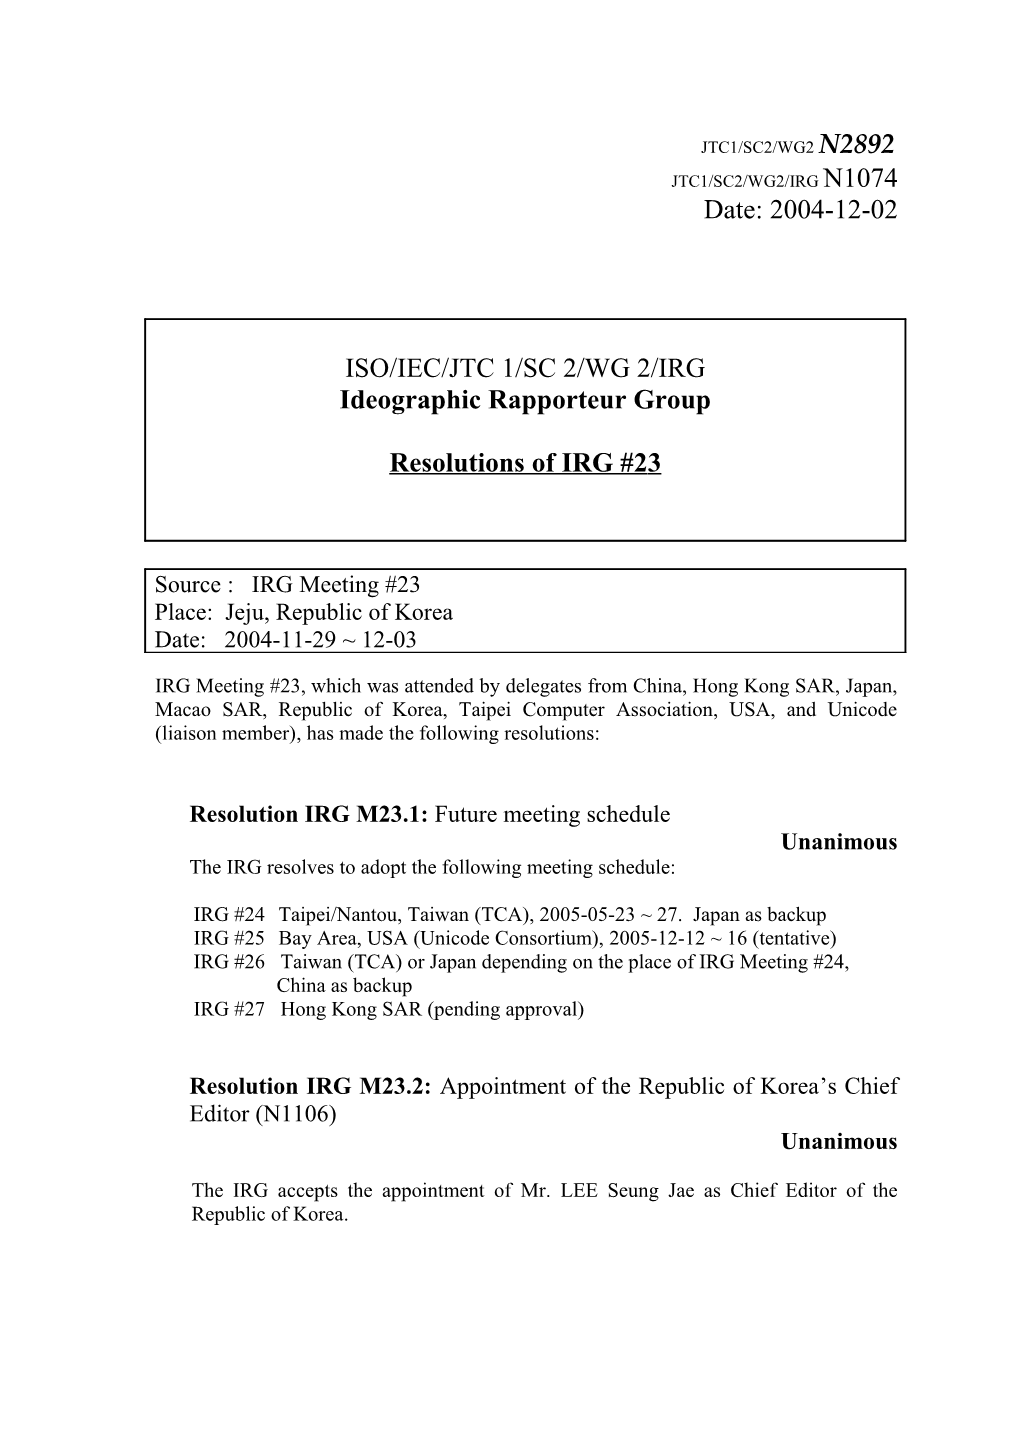 Resolution IRG M23.1: Future Meeting Schedule